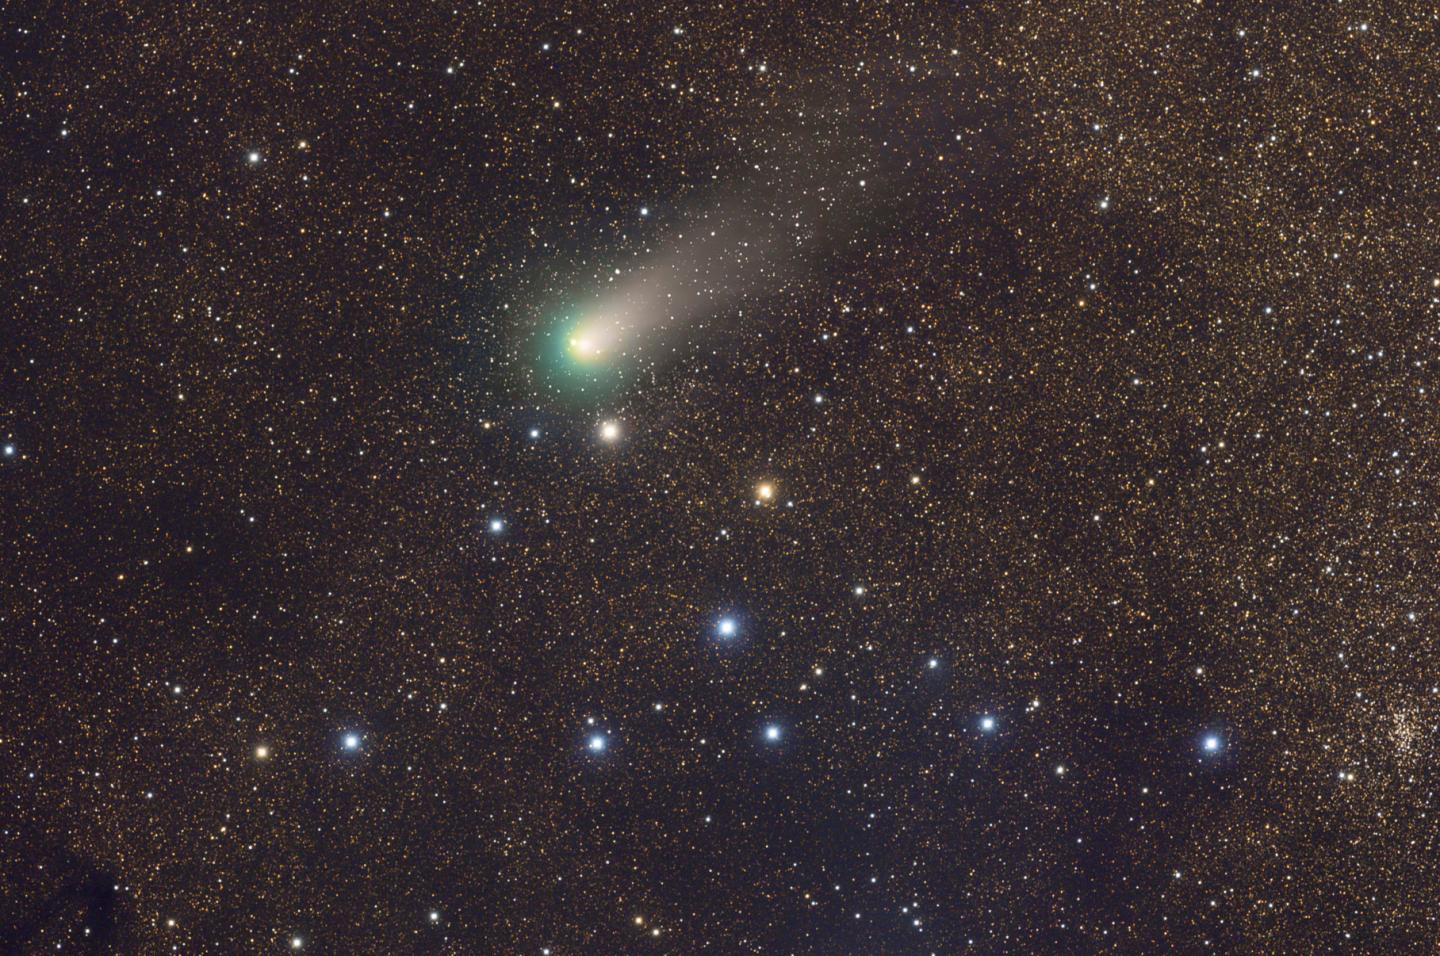 Comet C/2009 P1